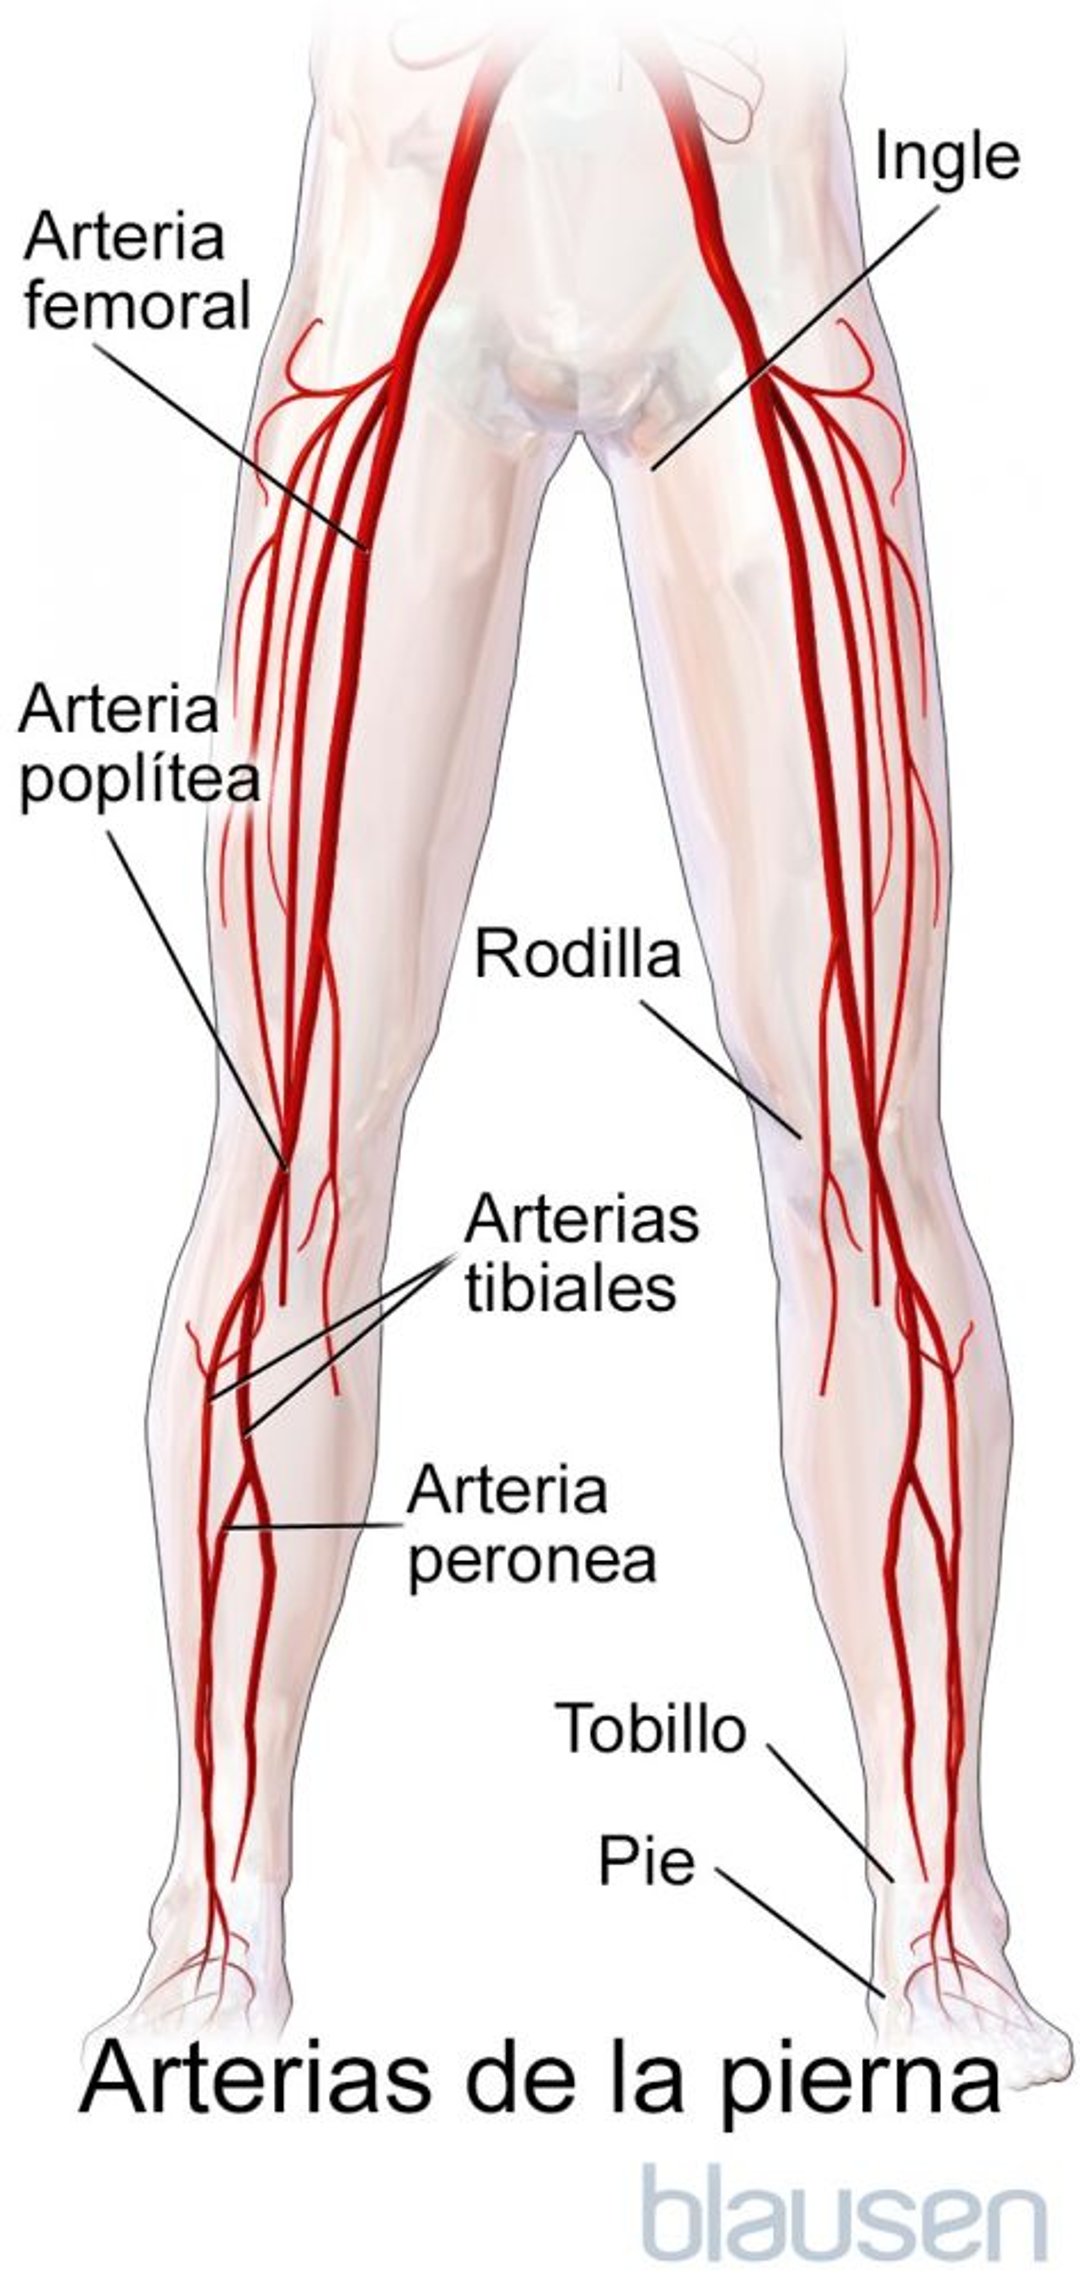 Arterias de la pierna